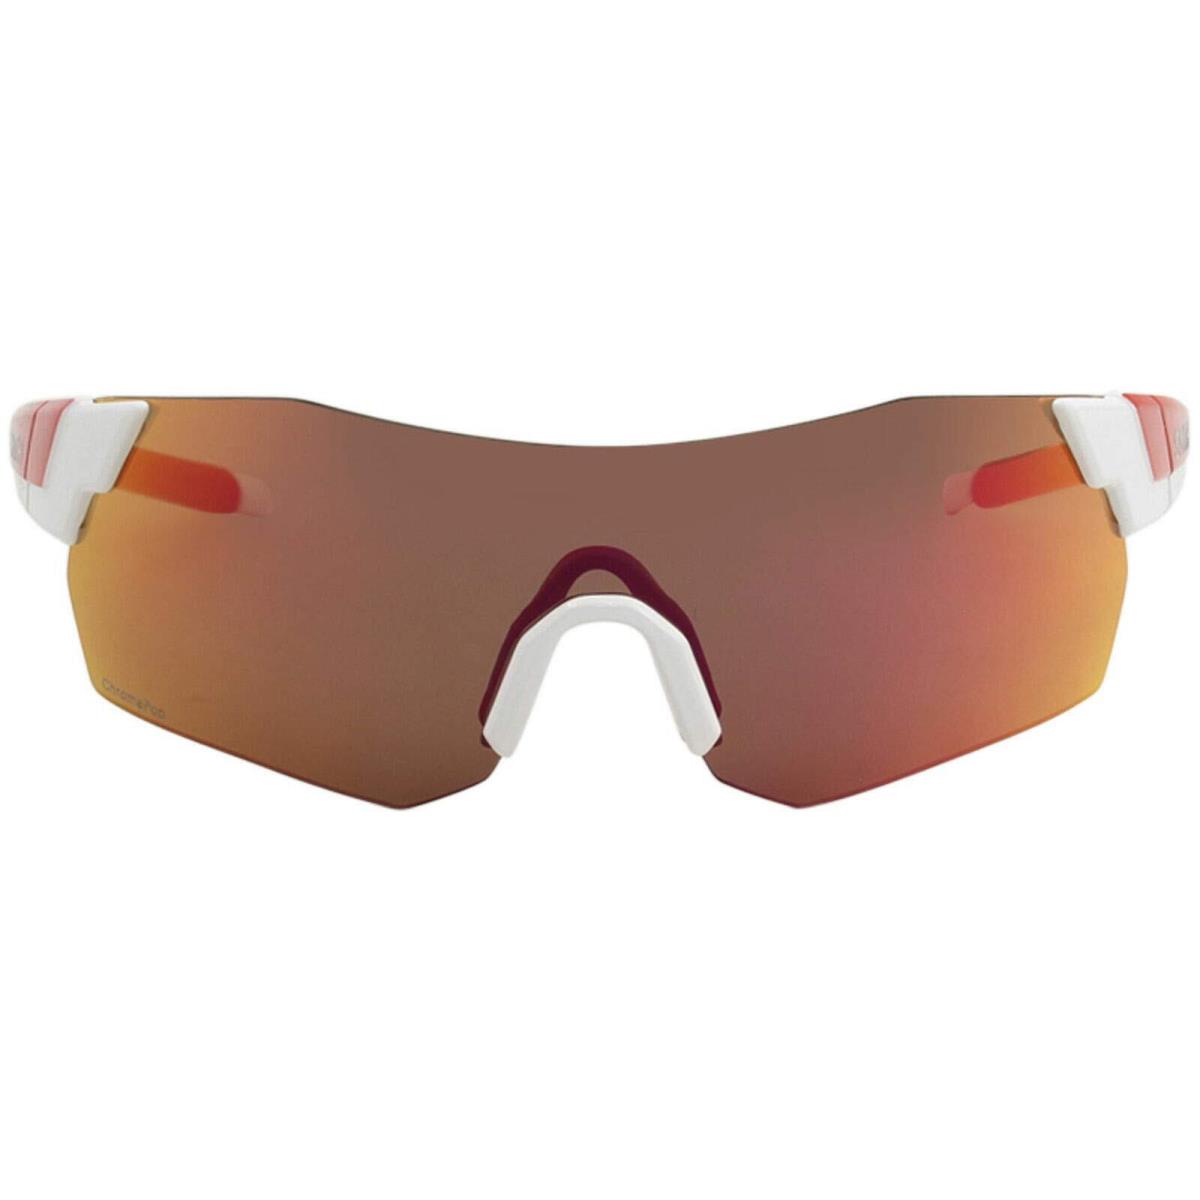 PLPKX63VK6-ARENAMAX Mens Smith Optics Pivlock Arena Max Sunglasses - Frame: White